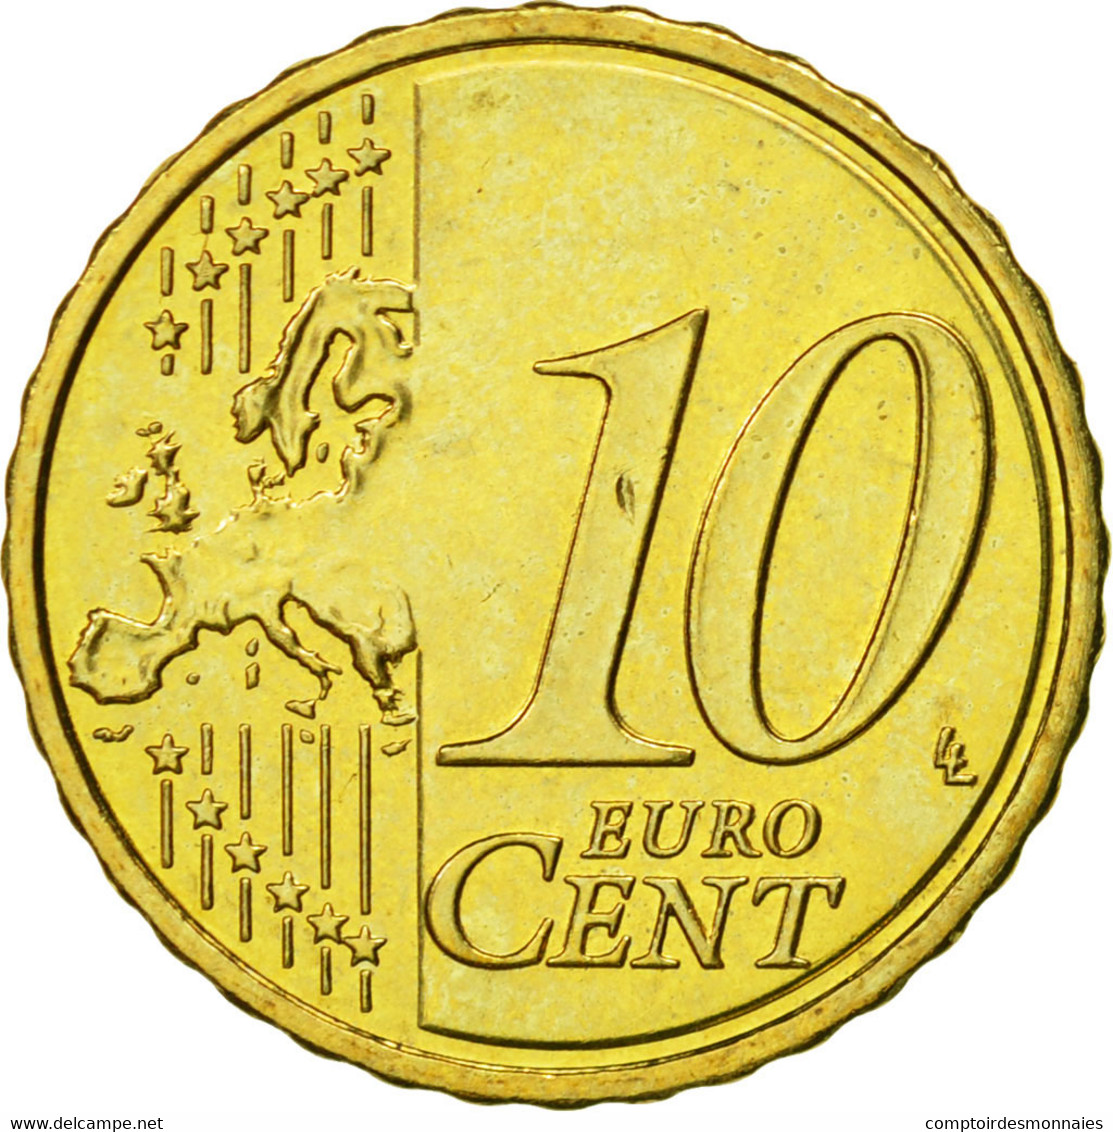 Chypre, 10 Euro Cent, 2009, FDC, Laiton, KM:81 - Zypern